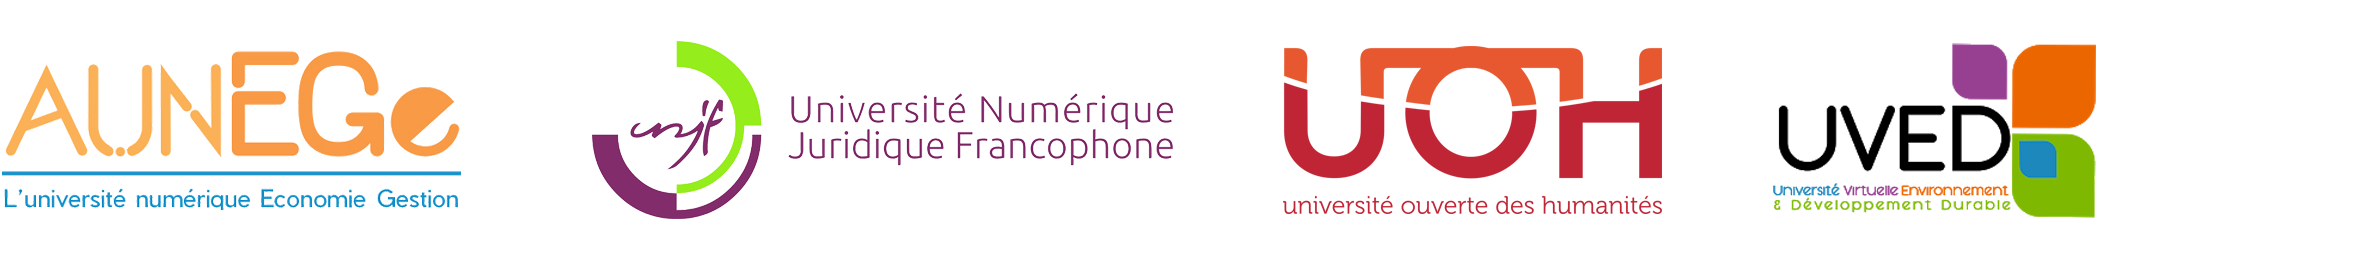 logos universités numériques thématiques : Aunege, UNJF, UOH, UVED